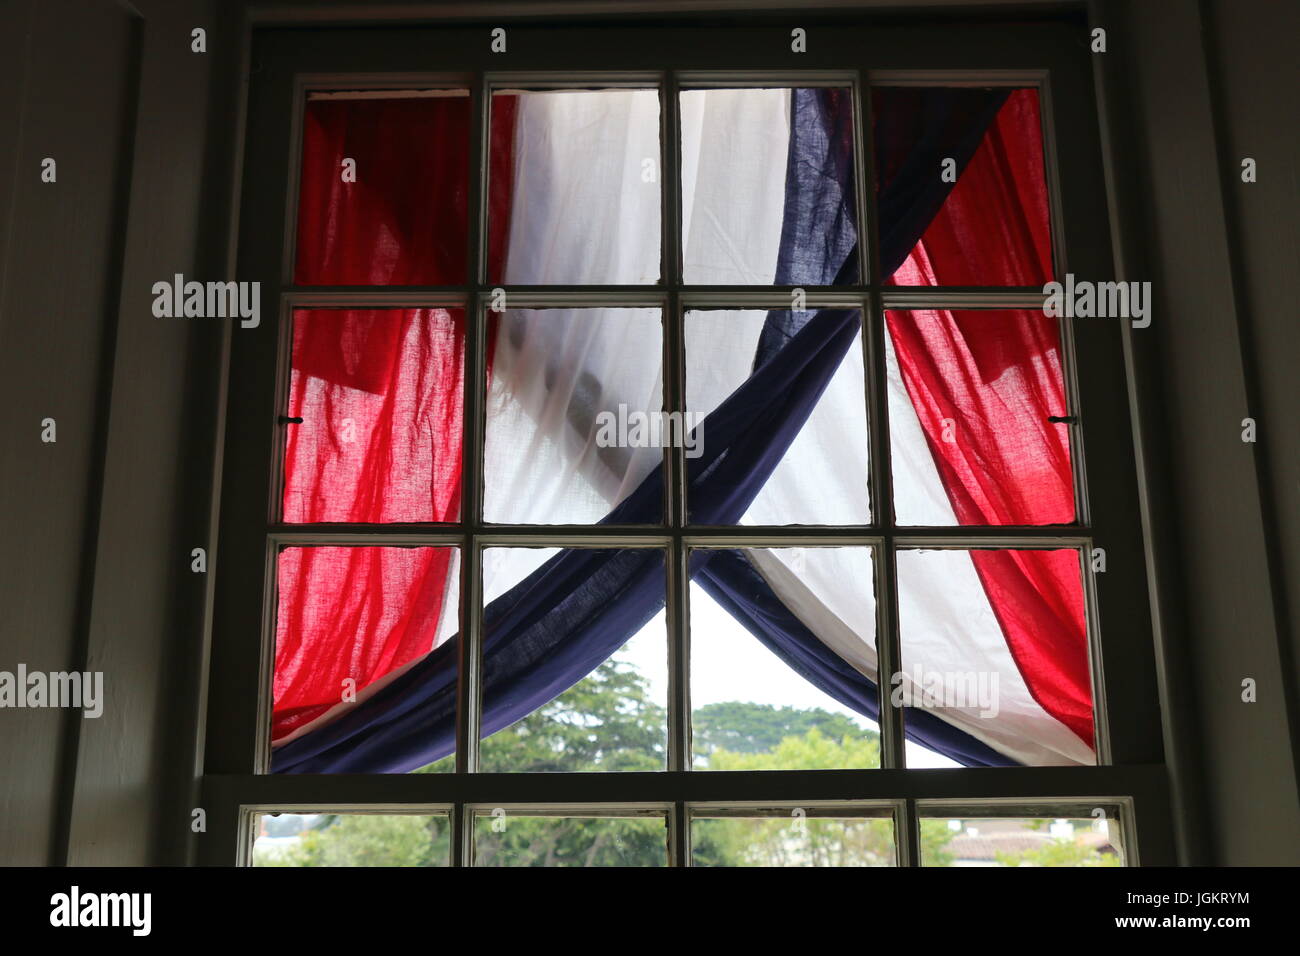 Drapeau américain Afficher, fenêtre, 4 juillet, Colton Hall, Monterey CA. Banque D'Images